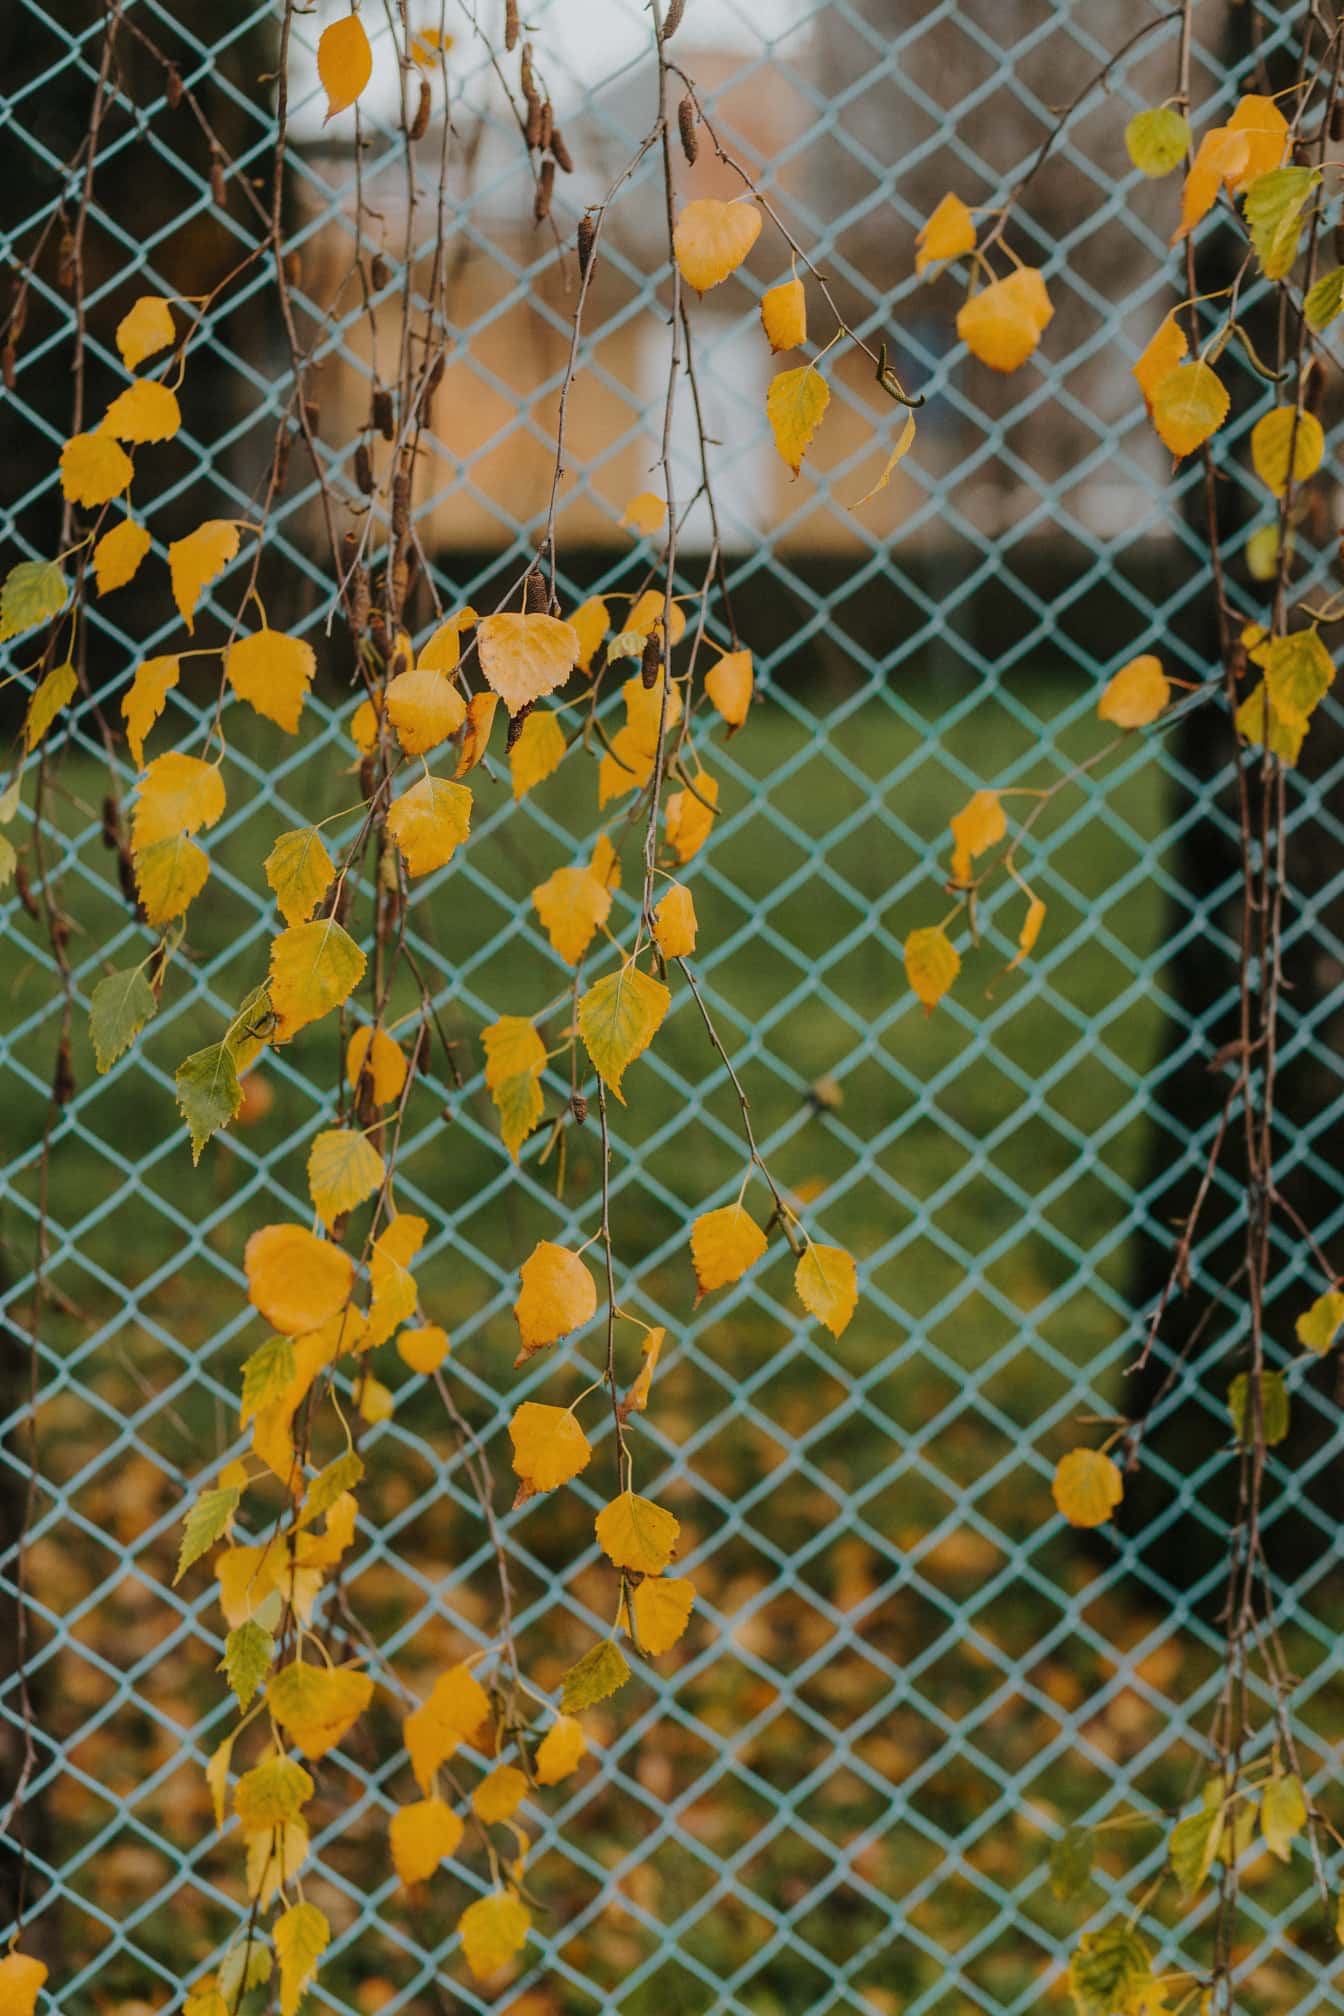 Gullige birkeblade på grene med hegn tilbage